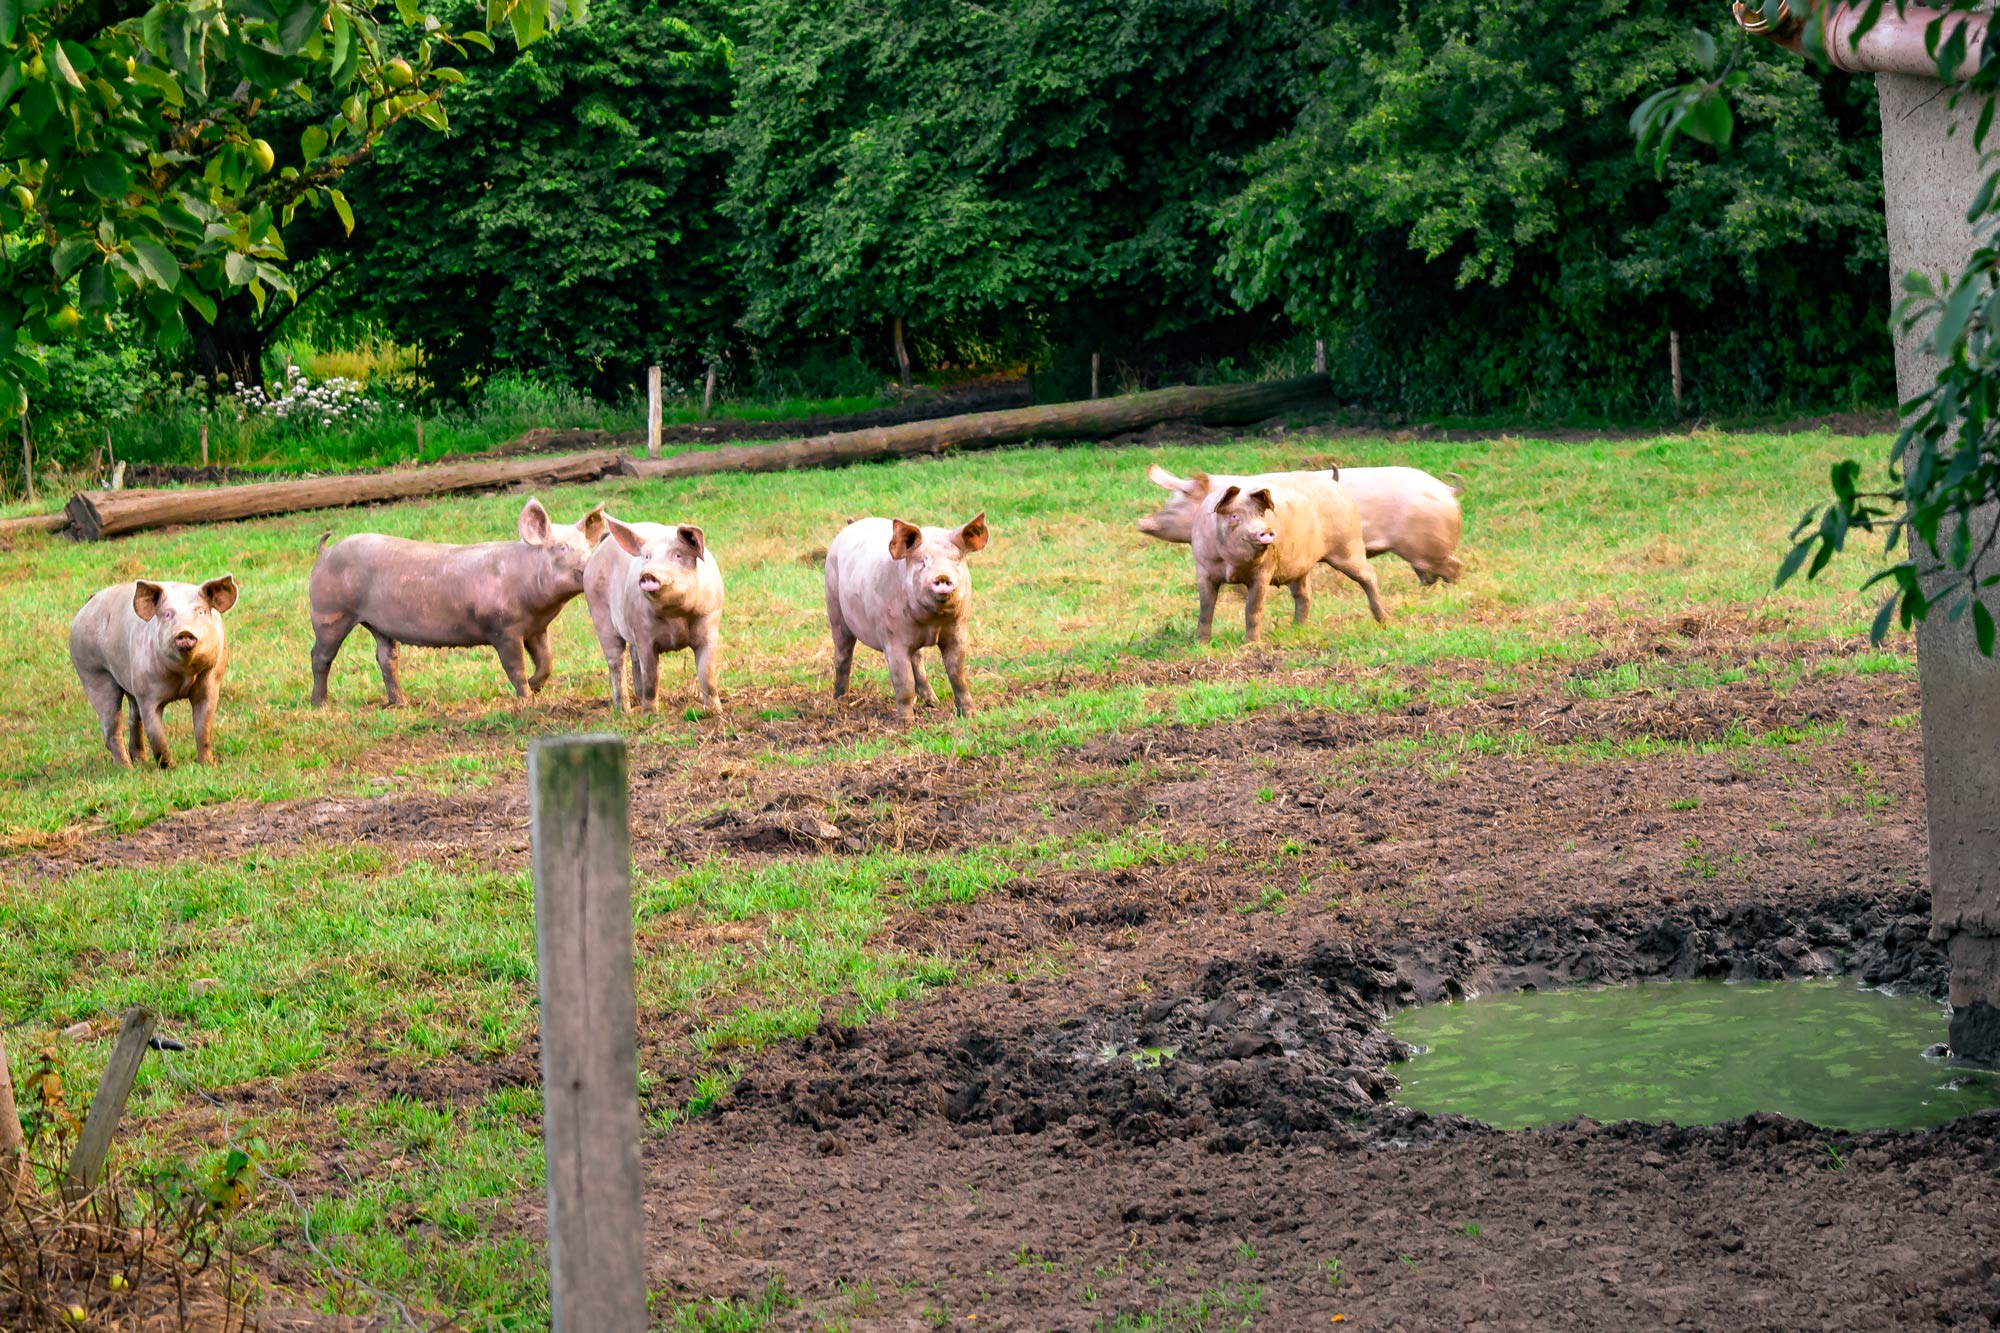 Meisterhof Wehdebrock - hochwertiges Schweinefleisch durch gesunde Tiere ohne Antibiotika auf der Schweine-Wiese